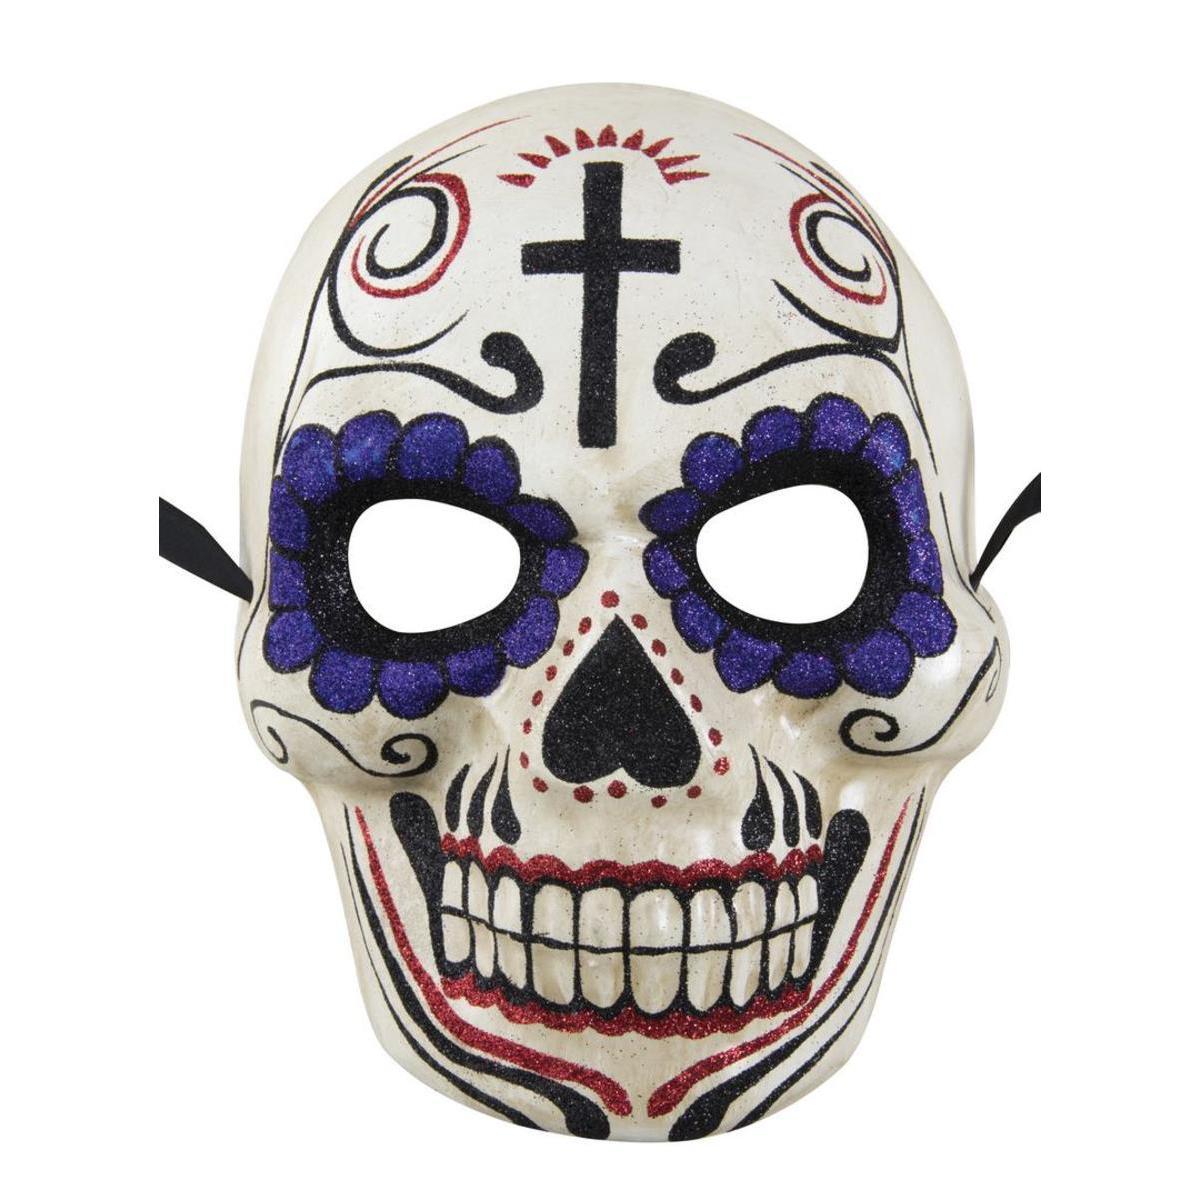 Masque du Jour des Morts - Taille adulte unique - Différents modèles - Bleu, rouge, noir, blanc